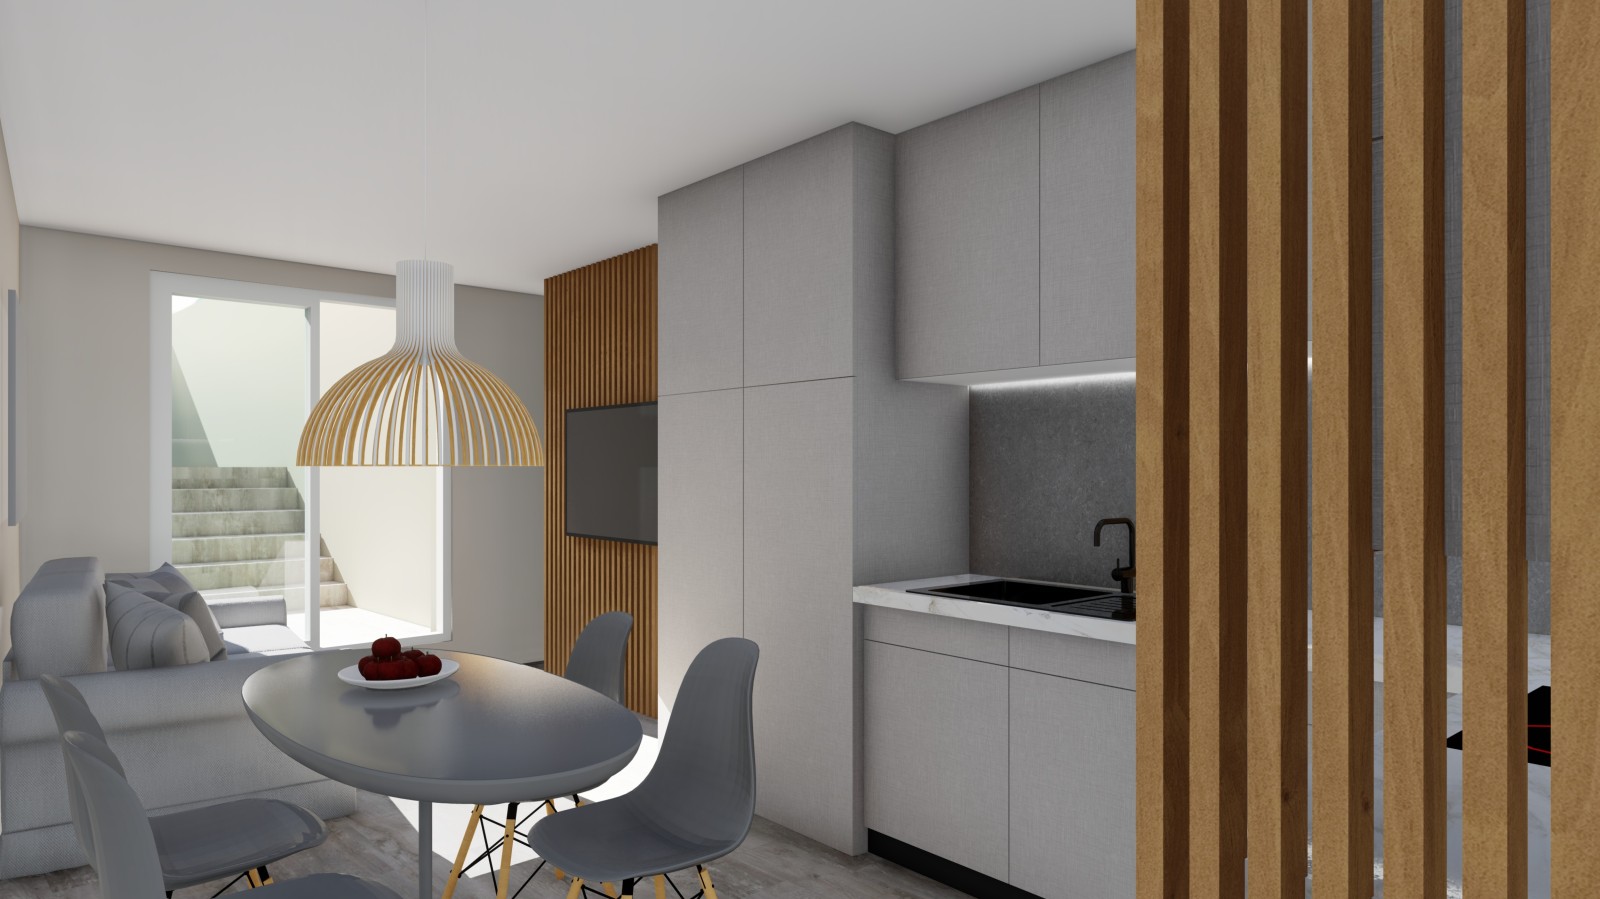 Apartamento T1 novo com varandas, para venda, no Porto_249150